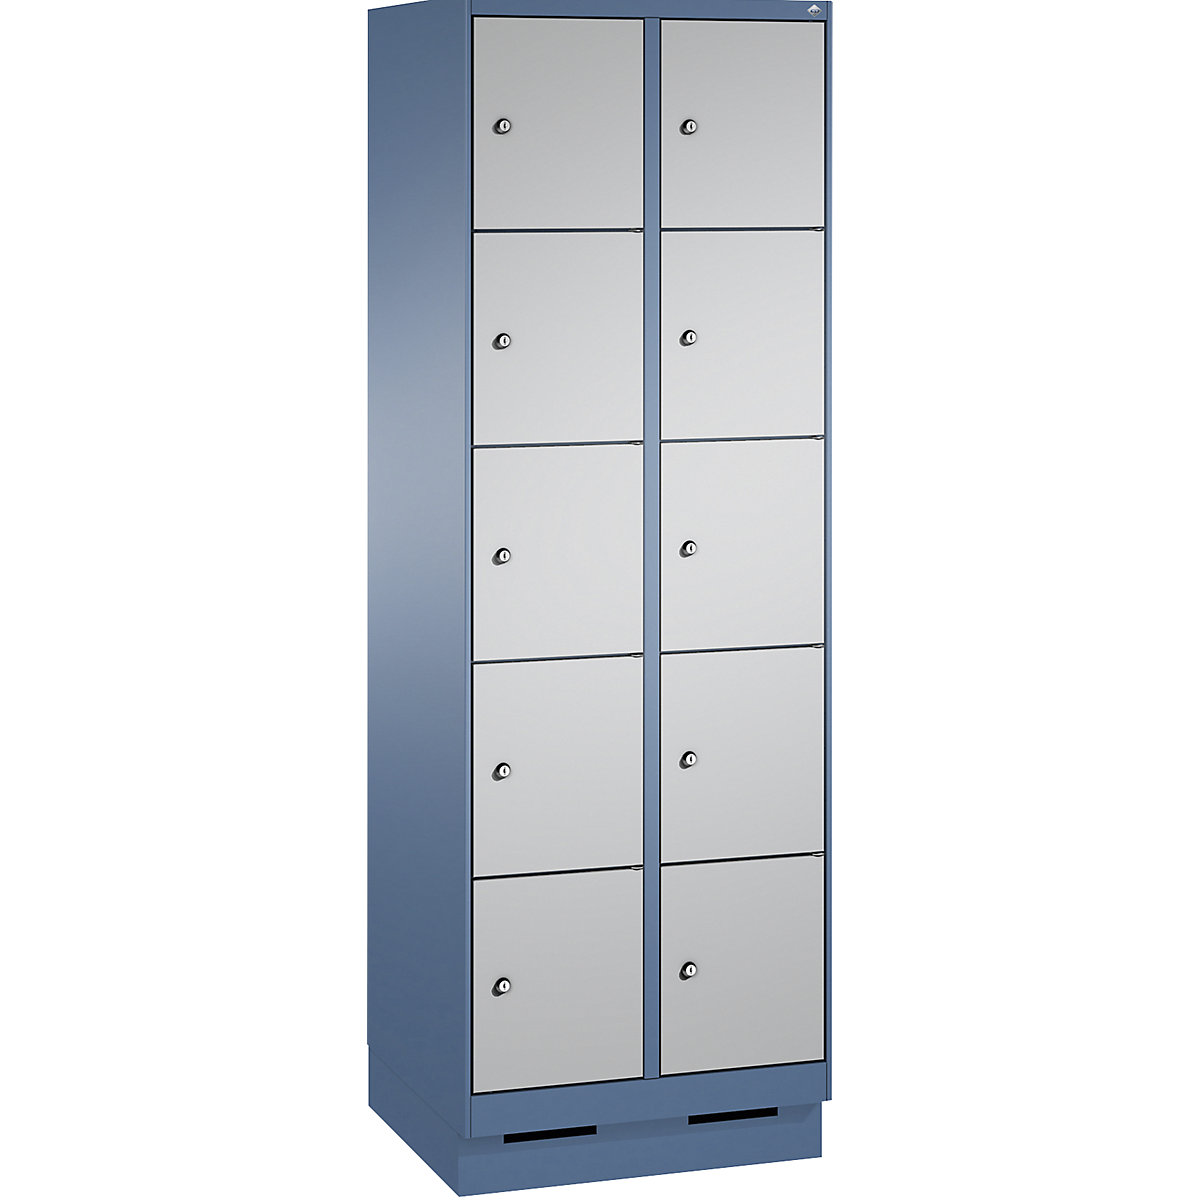 Armoire à casiers sur socle EVOLO – C+P, 2 compartiments, 5 casiers chacun, largeur compartiments 300 mm, bleu distant / aluminium-11